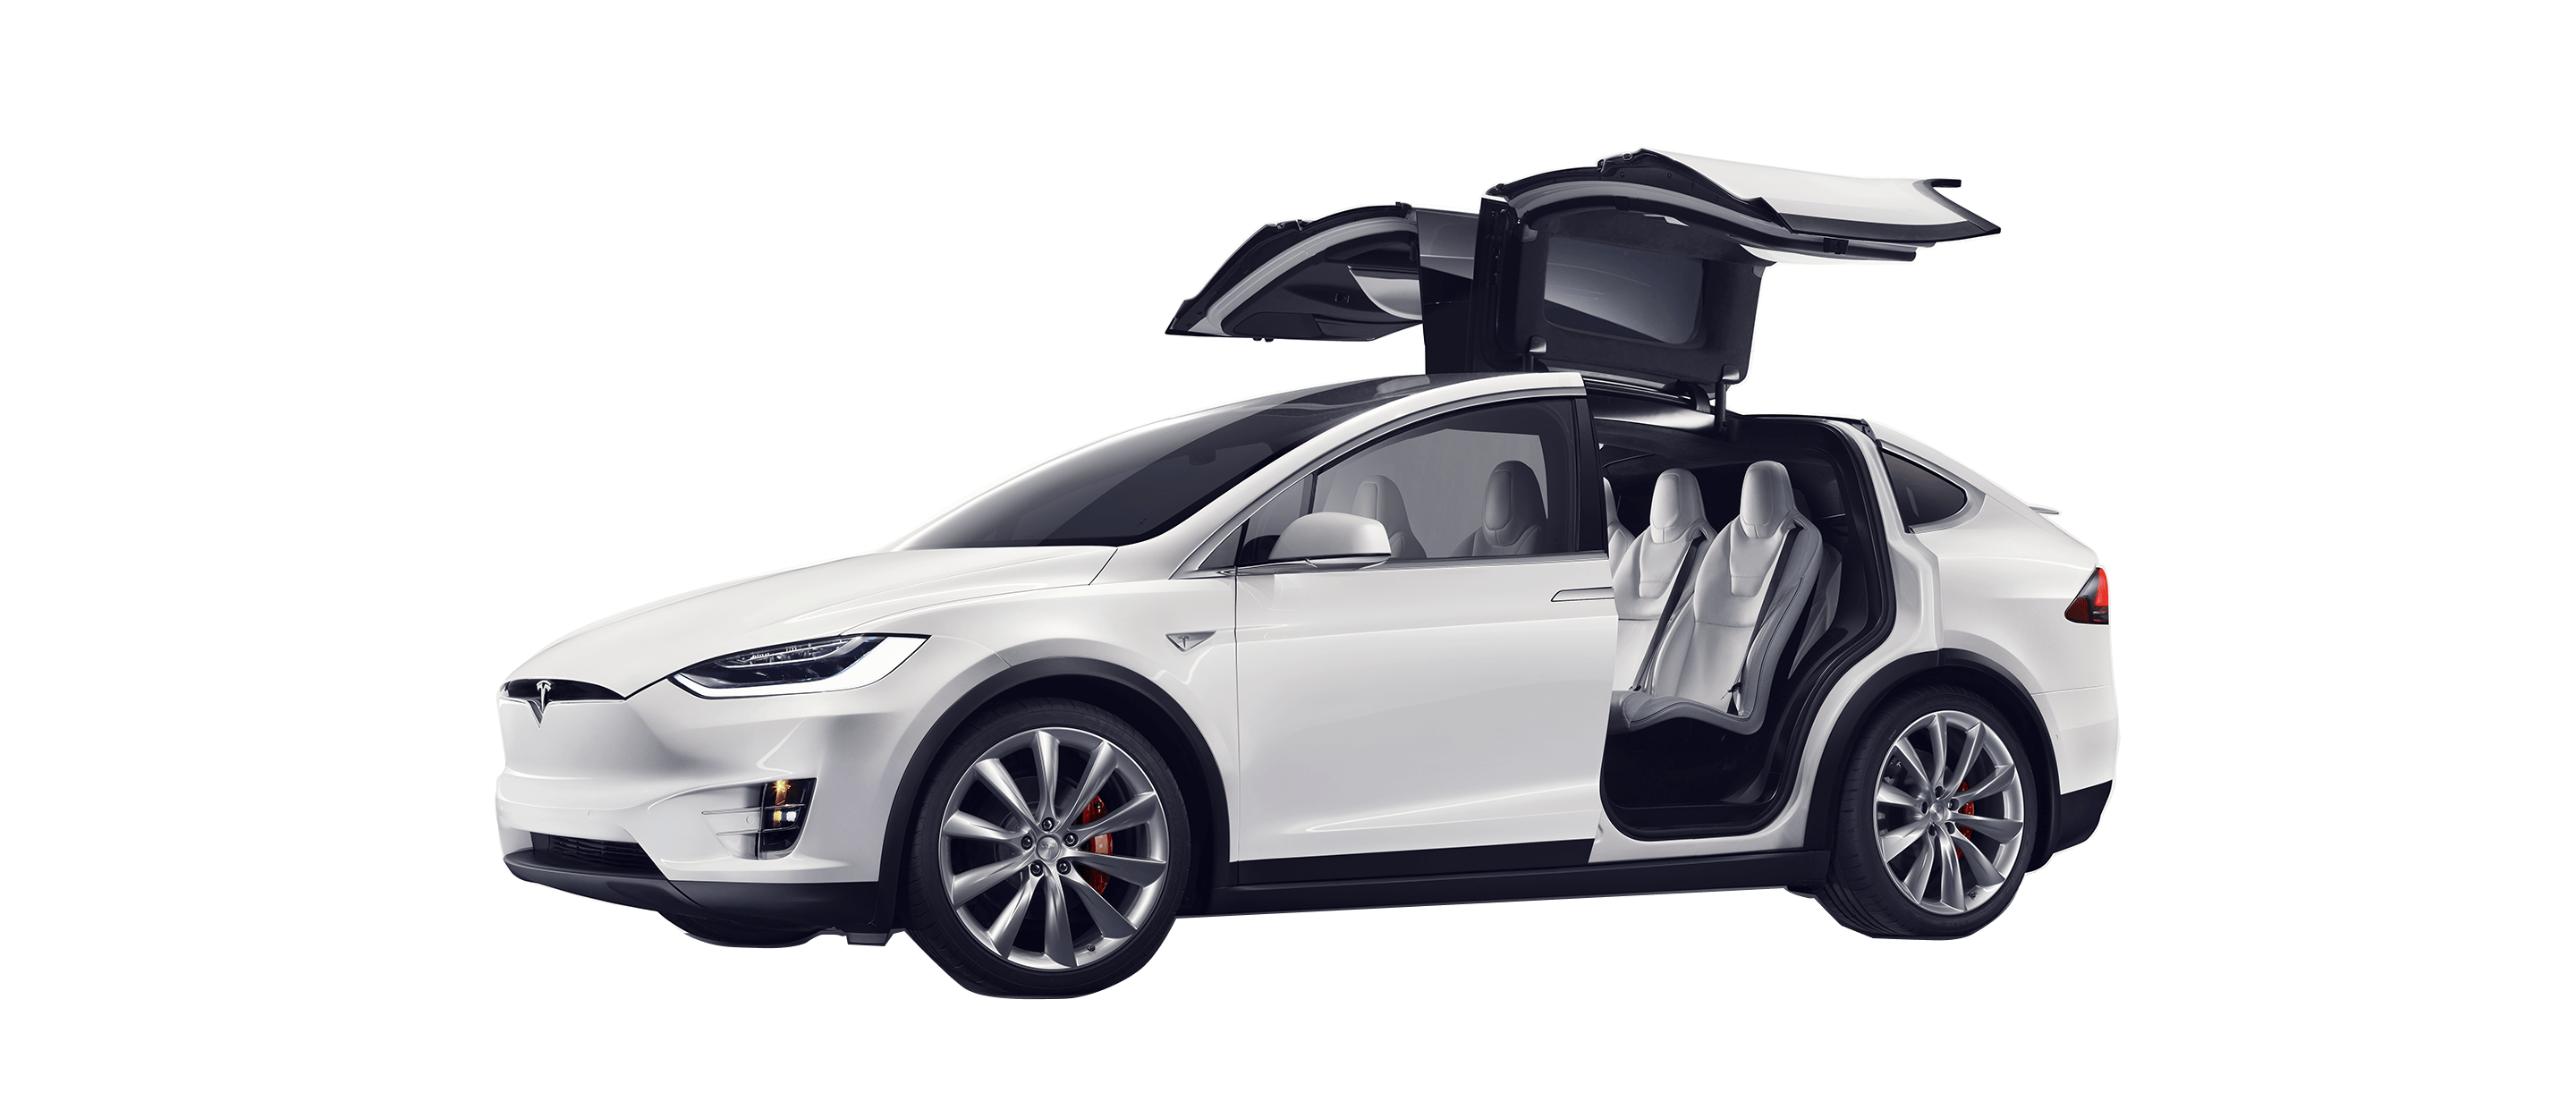 Tesla Model 3 PNG Pic Background